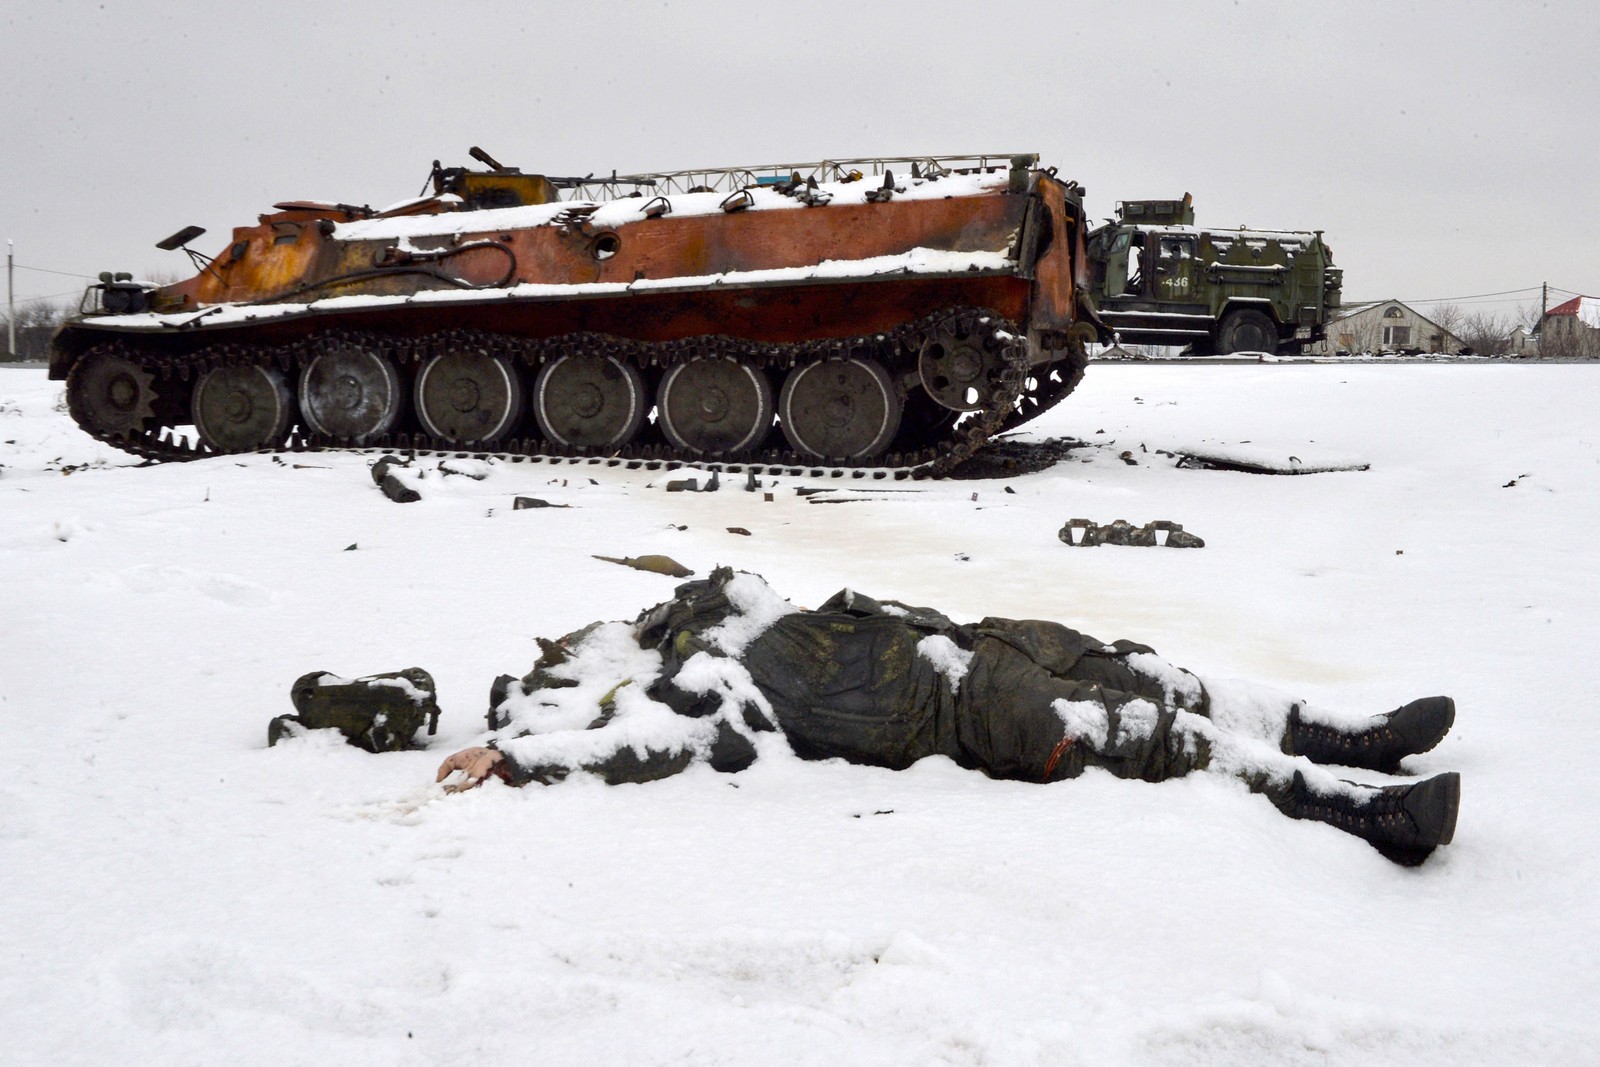 Corpo de um militar russo é visto perto de tanques de guerra destruídos na beira da estrada nos arredores de Kharkiv, em 26 de fevereiro, após a invasão russa da Ucrânia. — Foto: Sergey BOBOK / AFP